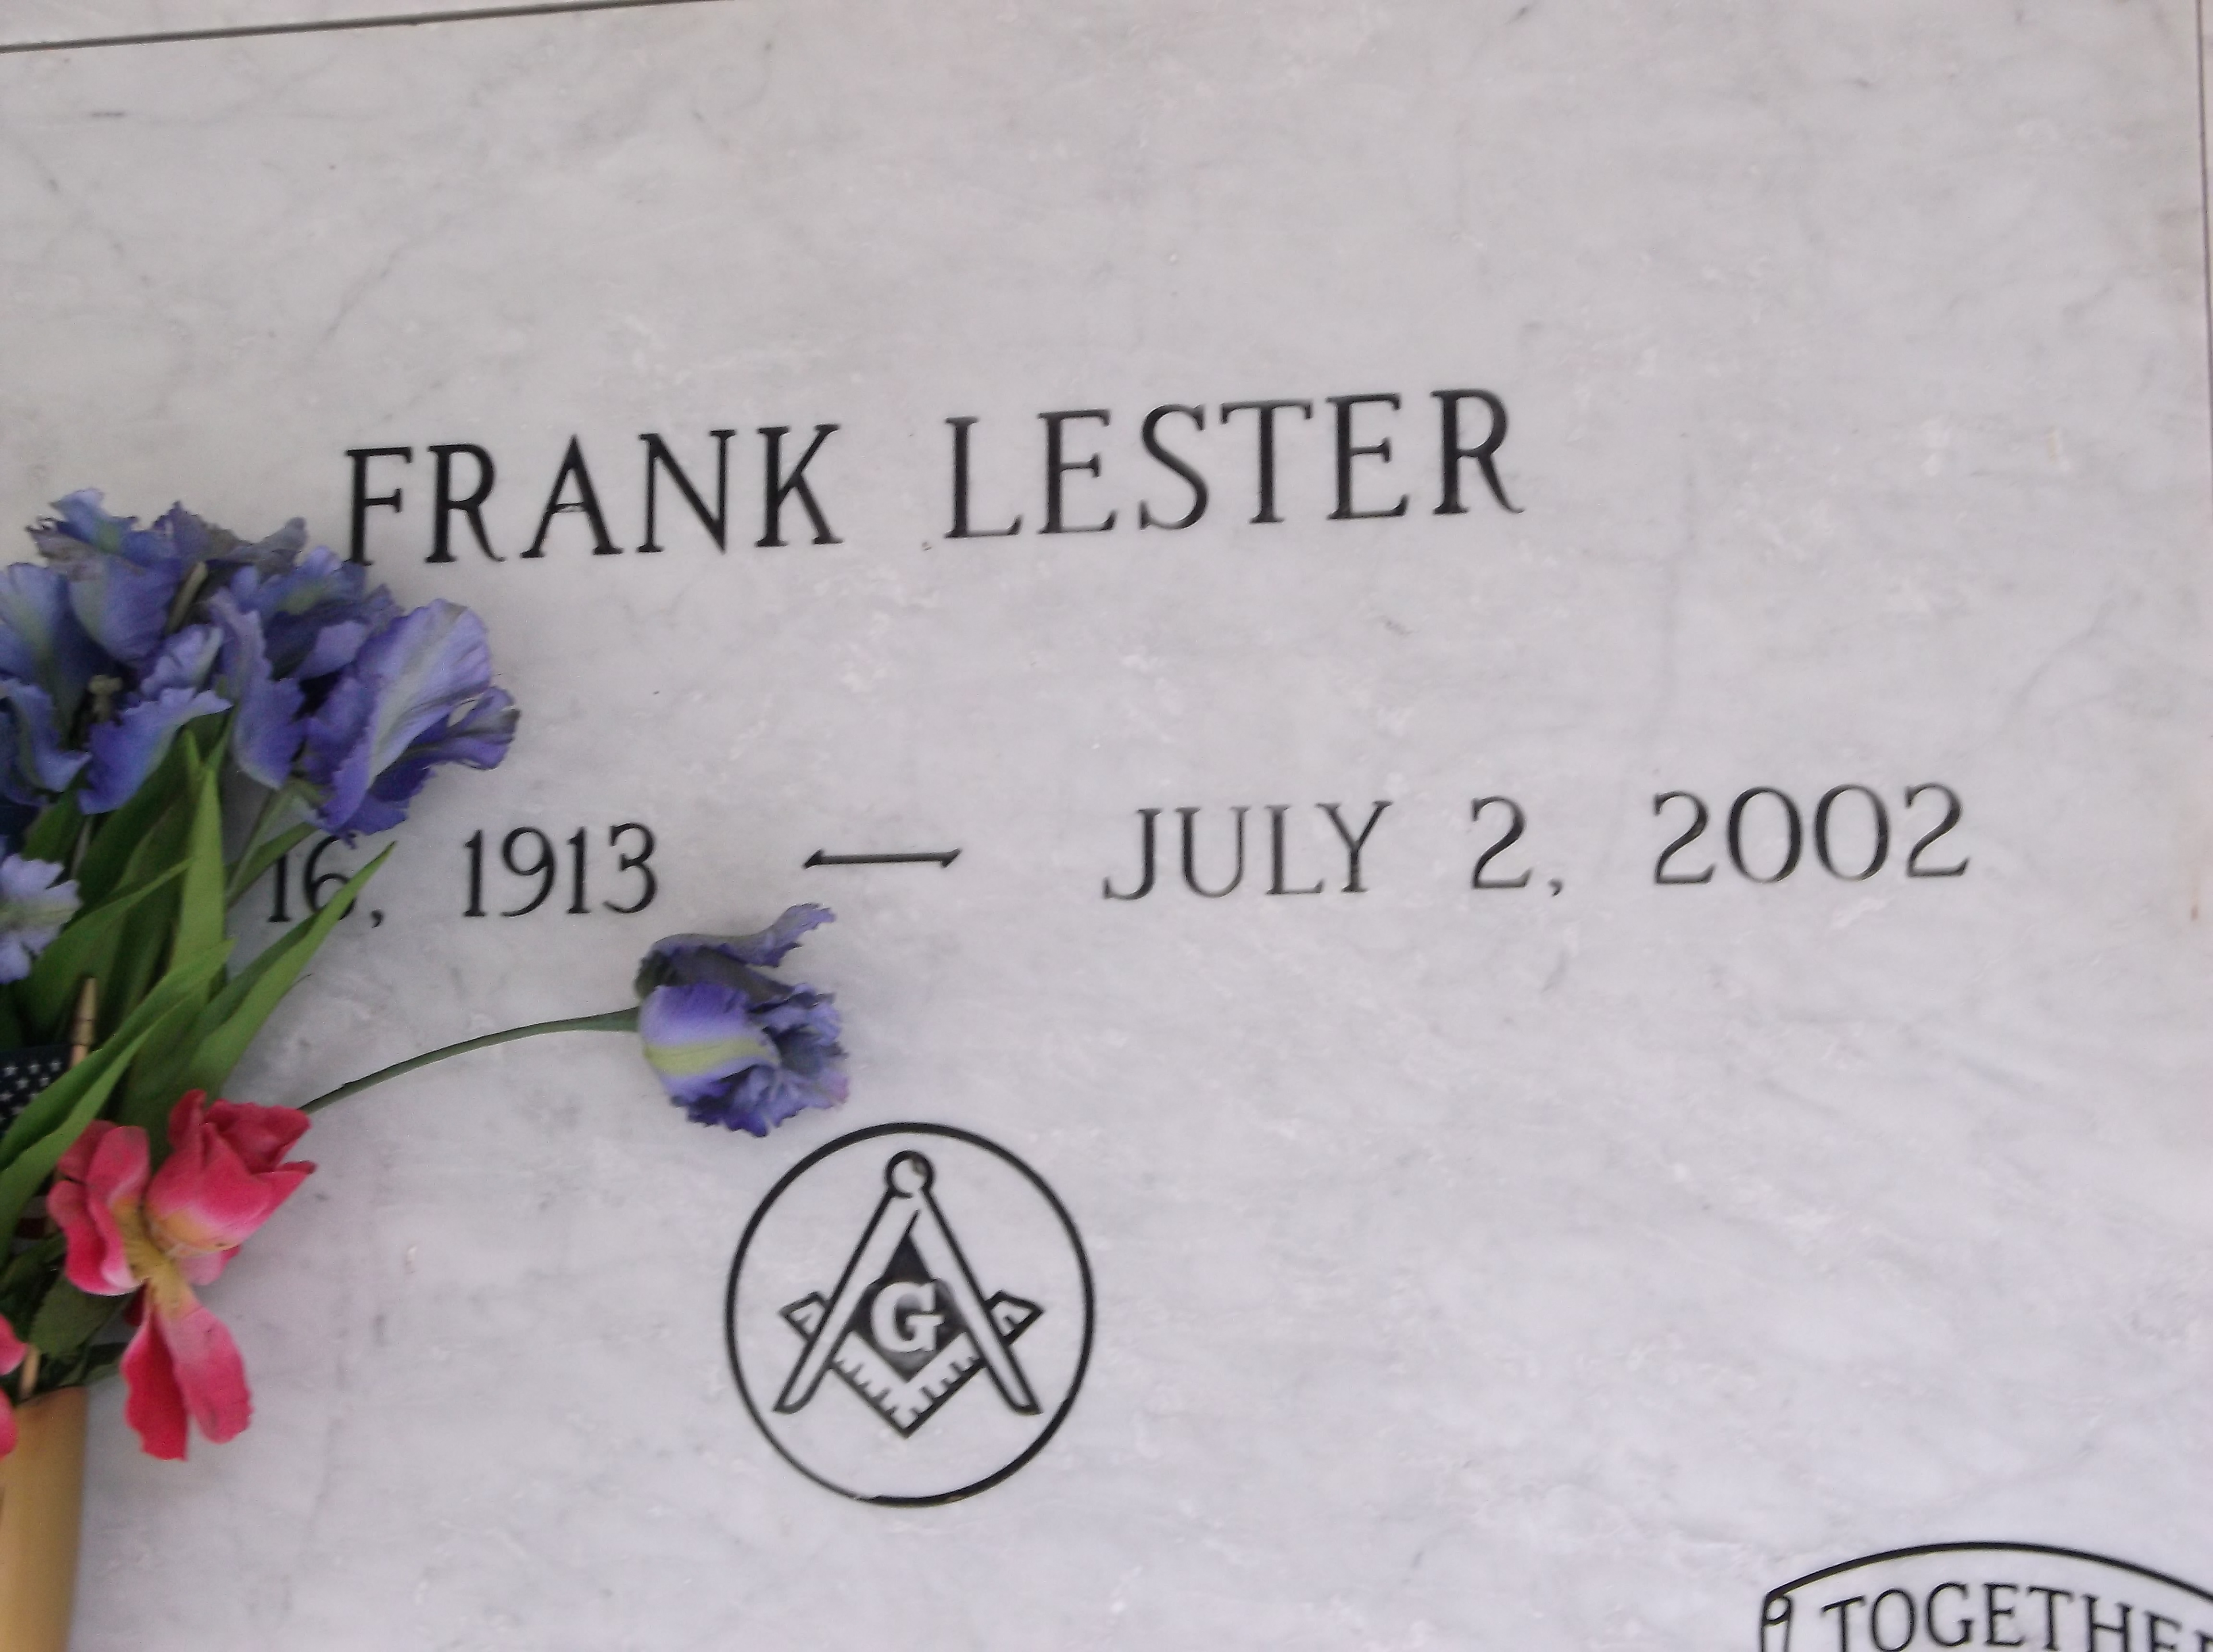 Frank Lester